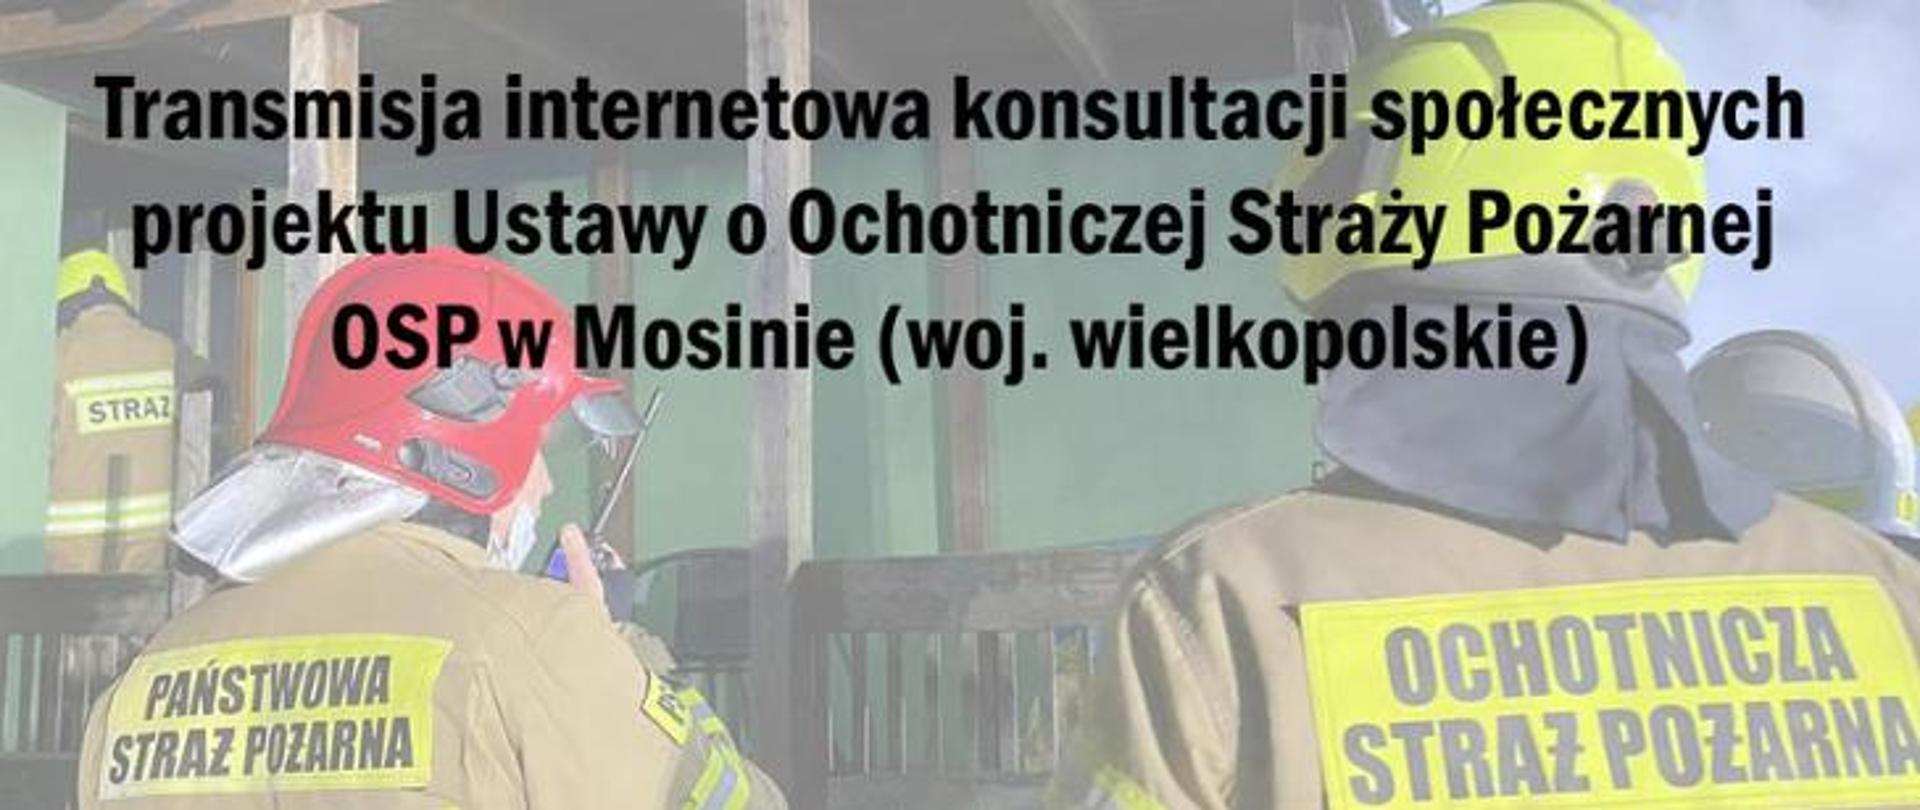 Dwóch strażaków odwróconych tyłem, ubranych w ubrania specjalne, na plecach napisy Państwowa Straż Pożarna oraz Ochotnicza Straż Pożarna. Na pierwszym planie napis transmisja internetowa konsultacji społecznych projektu ustawy o OSP, OSP Mosina (woj. wielkopolskie)